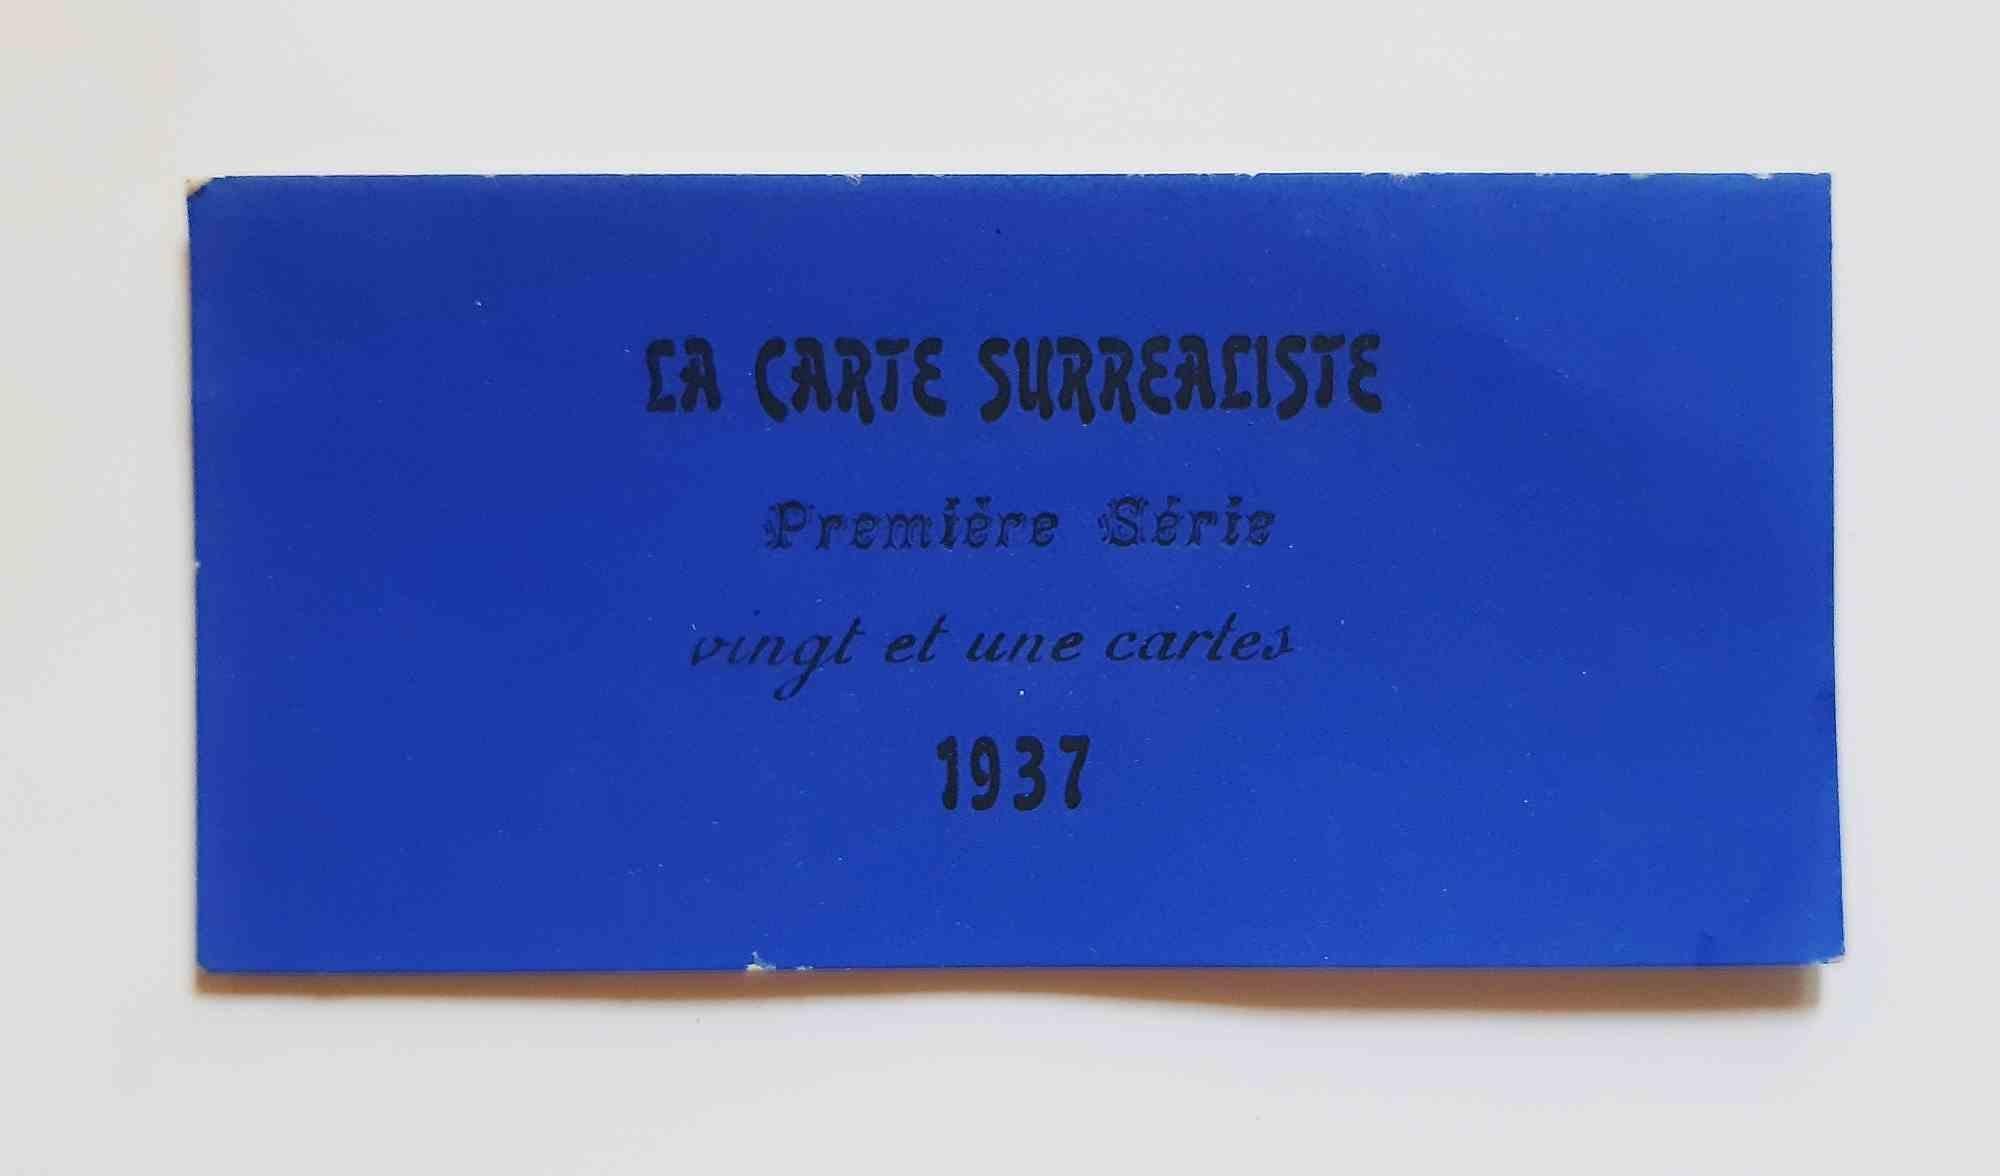 La Carte Surréaliste. Première série. Vingt et une cartes - 1937 - Print by Visionaire (Various Artists)